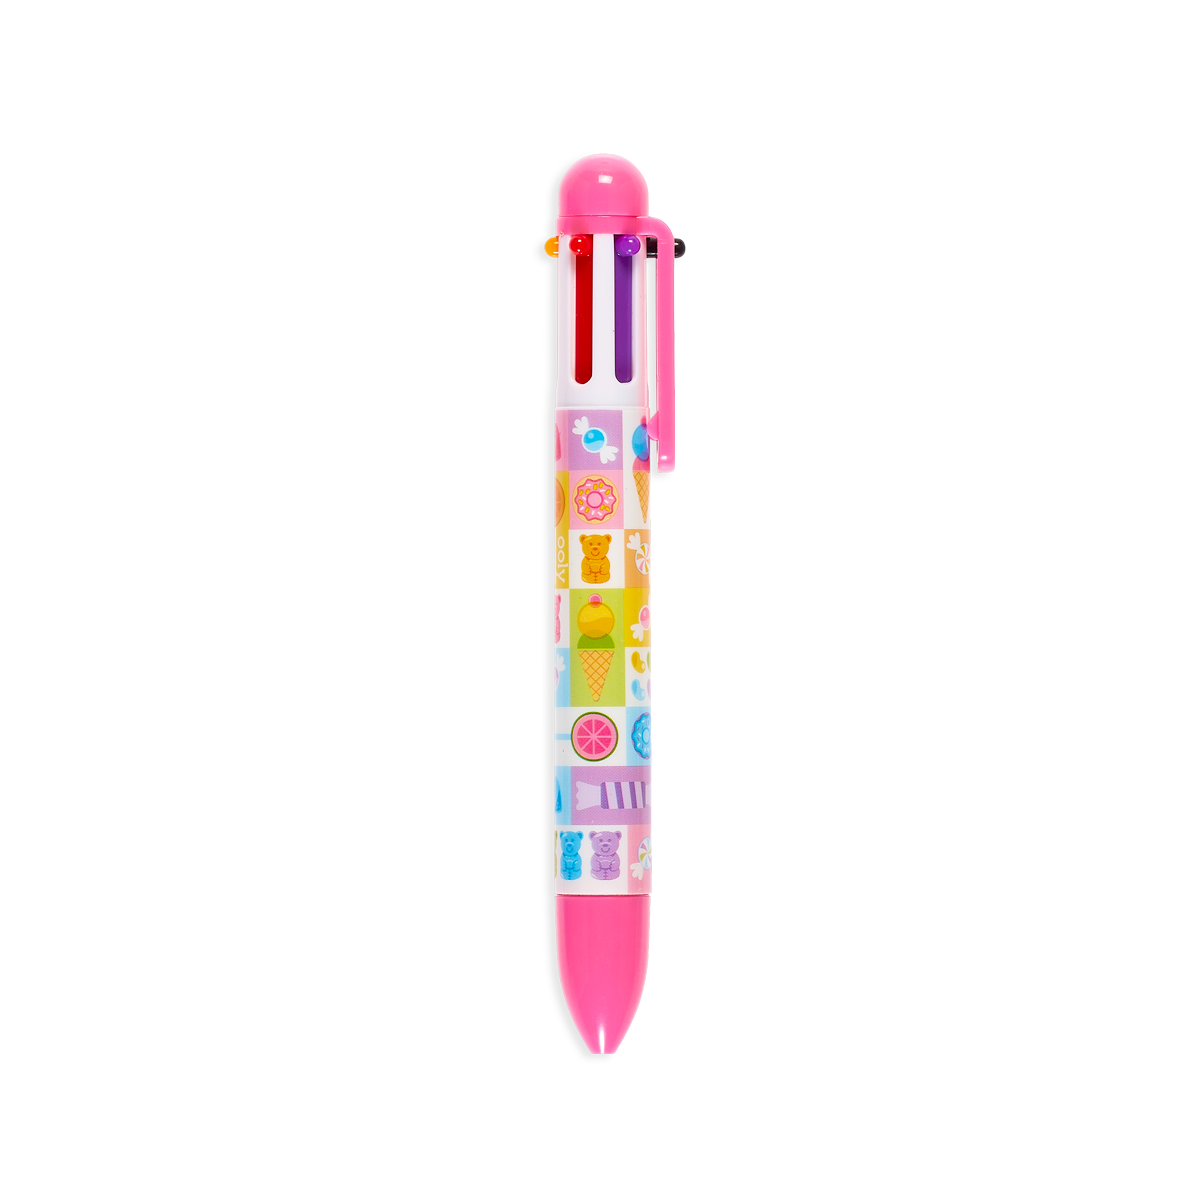 OOLY Sugar Joy 6 Click Multicolor Pen in pink